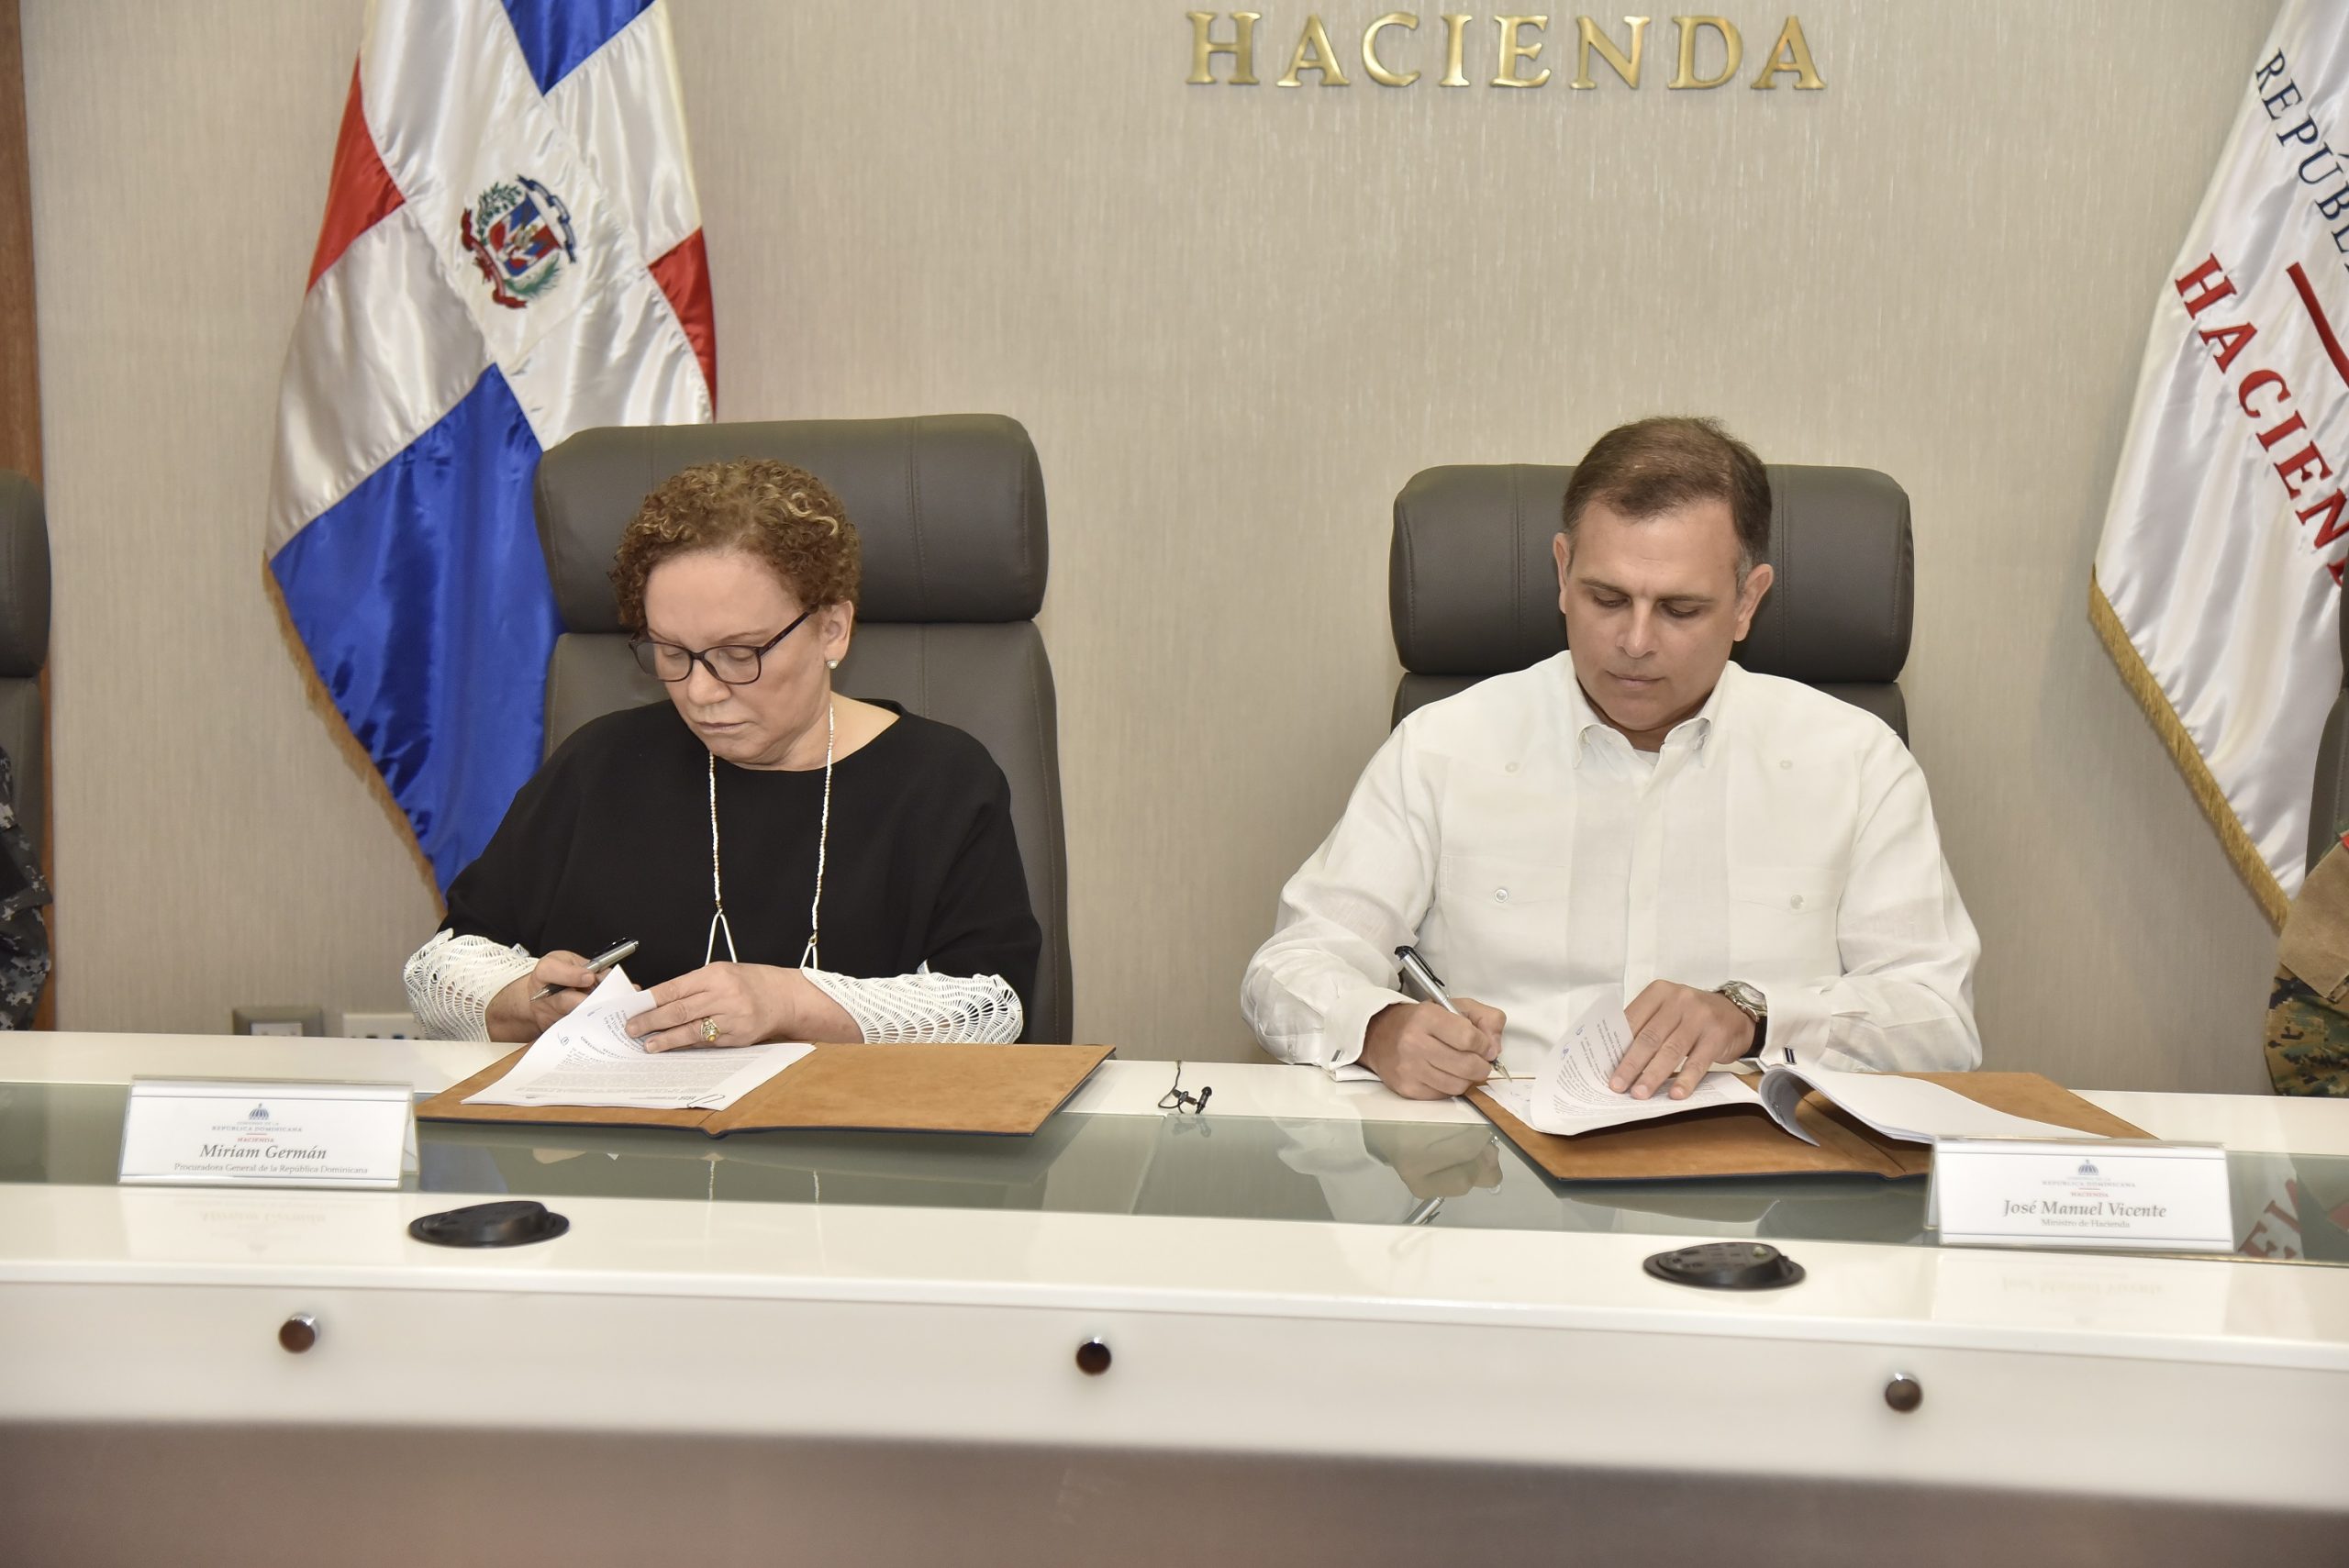 El ministro de Hacienda, Jochi Vicente, y la procuradora general de la República, Miriam Germán Brito, durante la firma del protocolo.